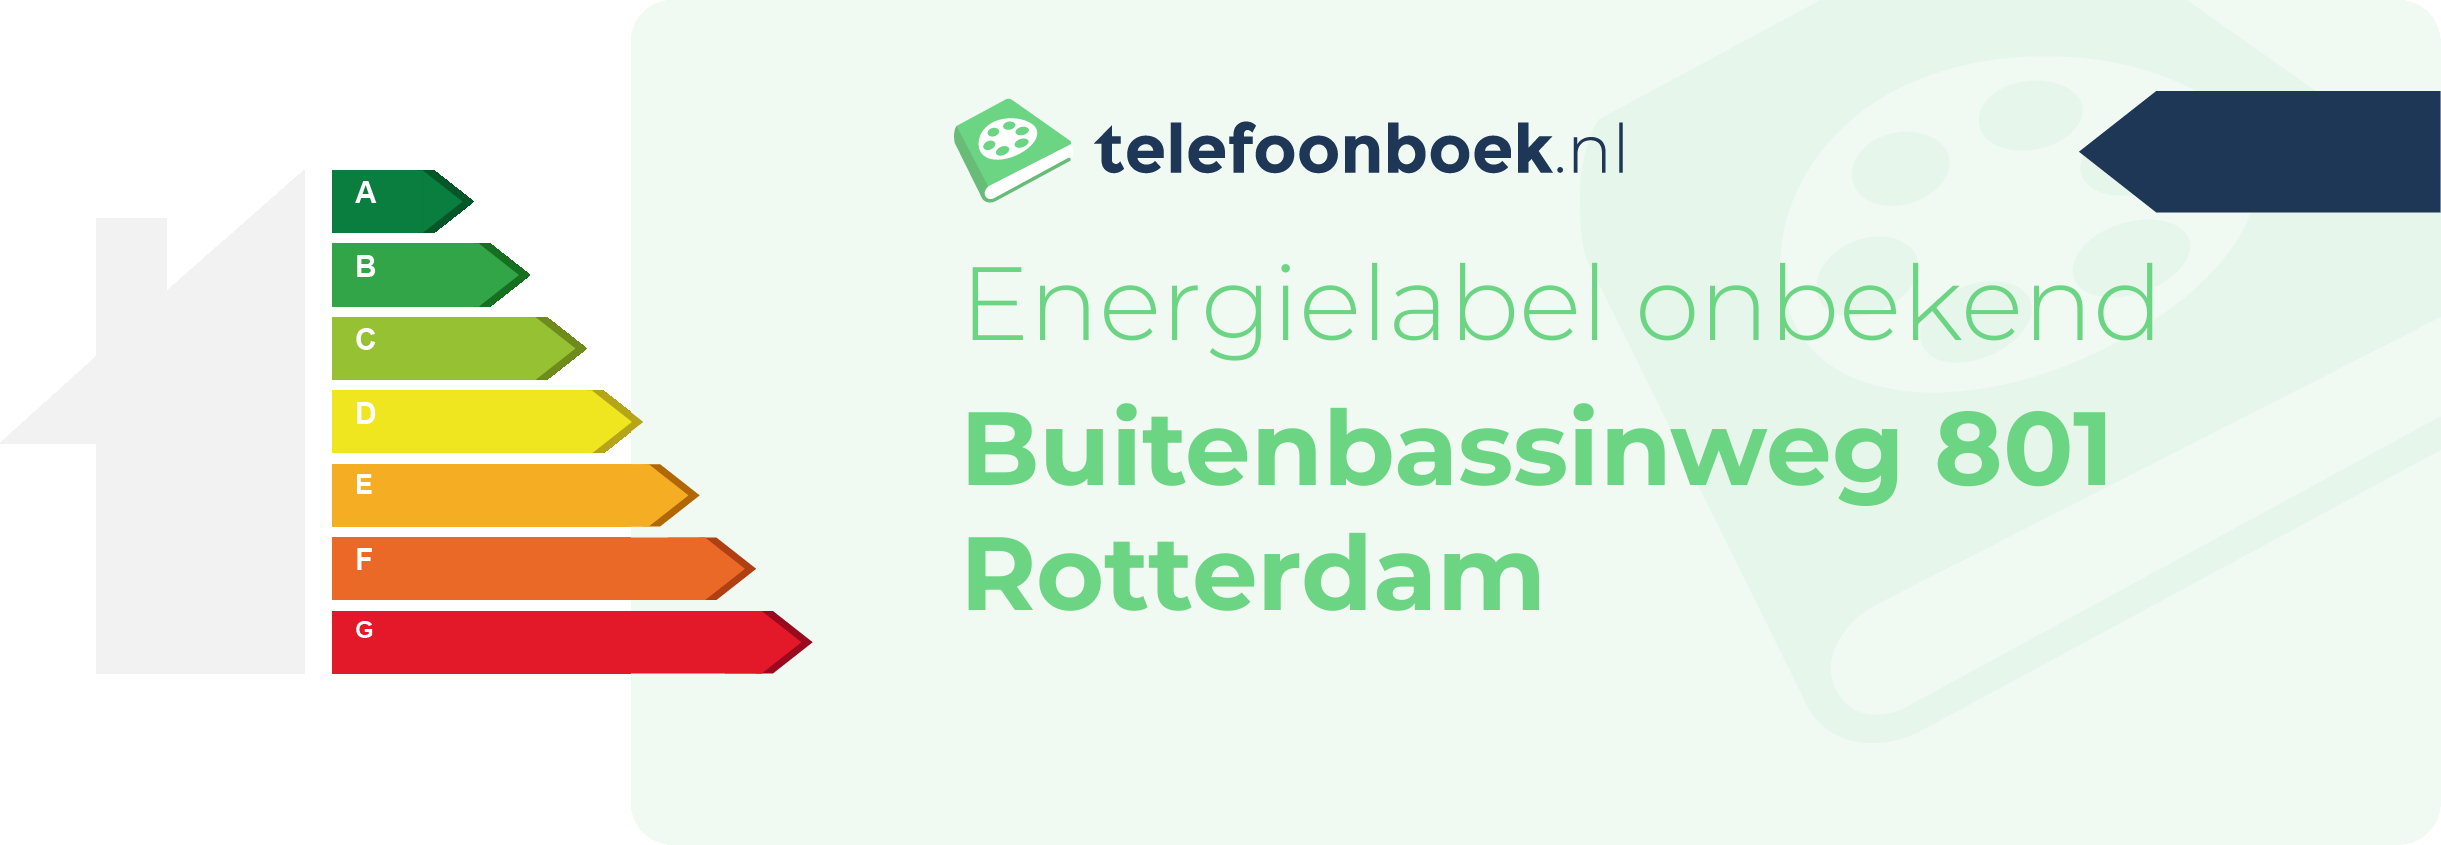 Energielabel Buitenbassinweg 801 Rotterdam